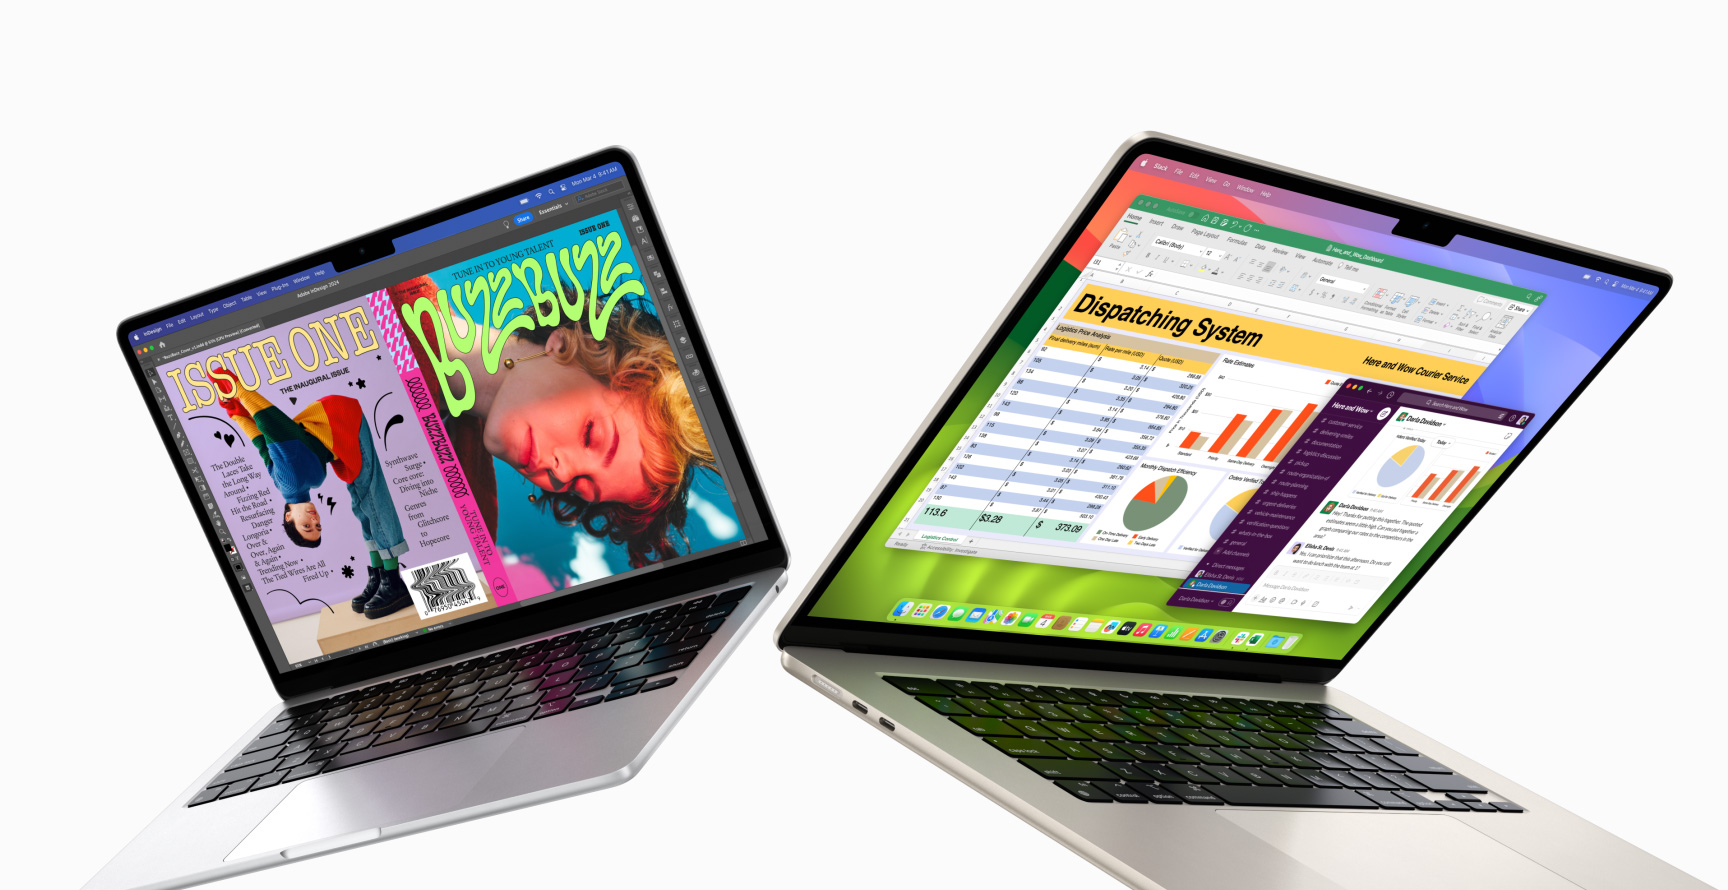 Solda kısmen açık 13 inç MacBook Air ve sağda 15 inç MacBook Air. 13 inç ekranda In Design ile oluşturulan renkli fanzin kapağı gösteriliyor. 15 inç ekranda Microsoft Excel ve Slack gösteriliyor.